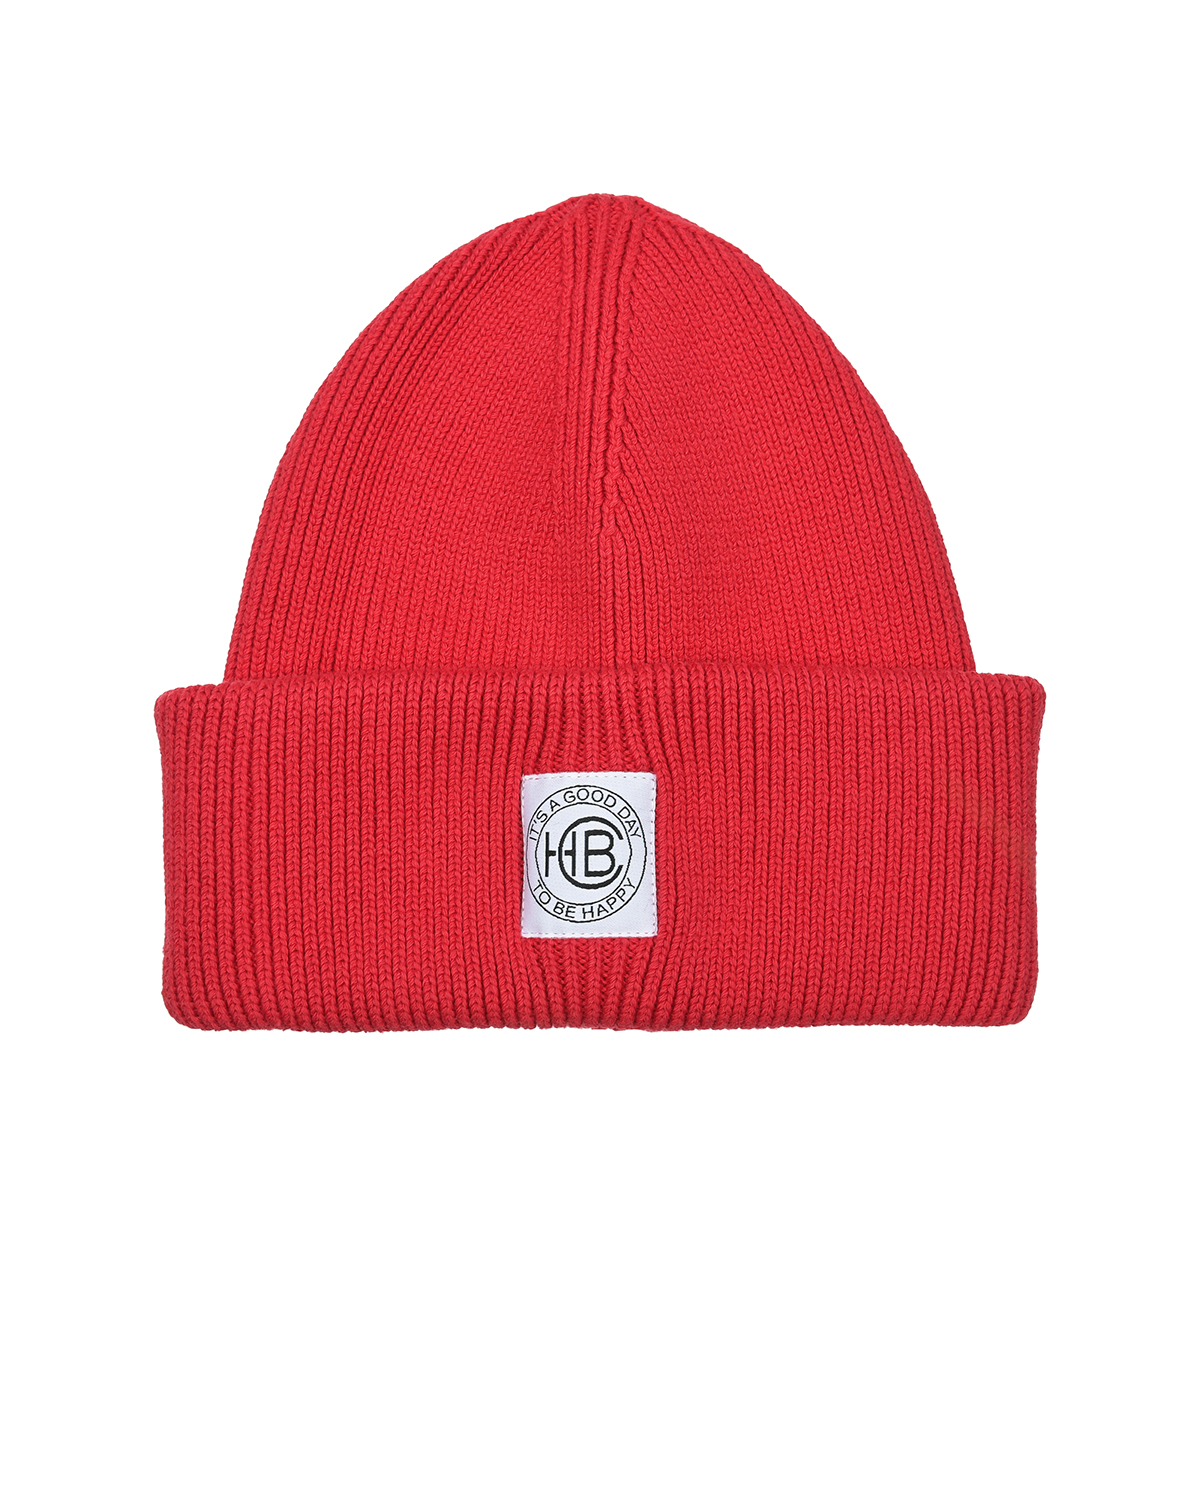 Красная шапка с отворотом Chobi, размер 55, цвет красный